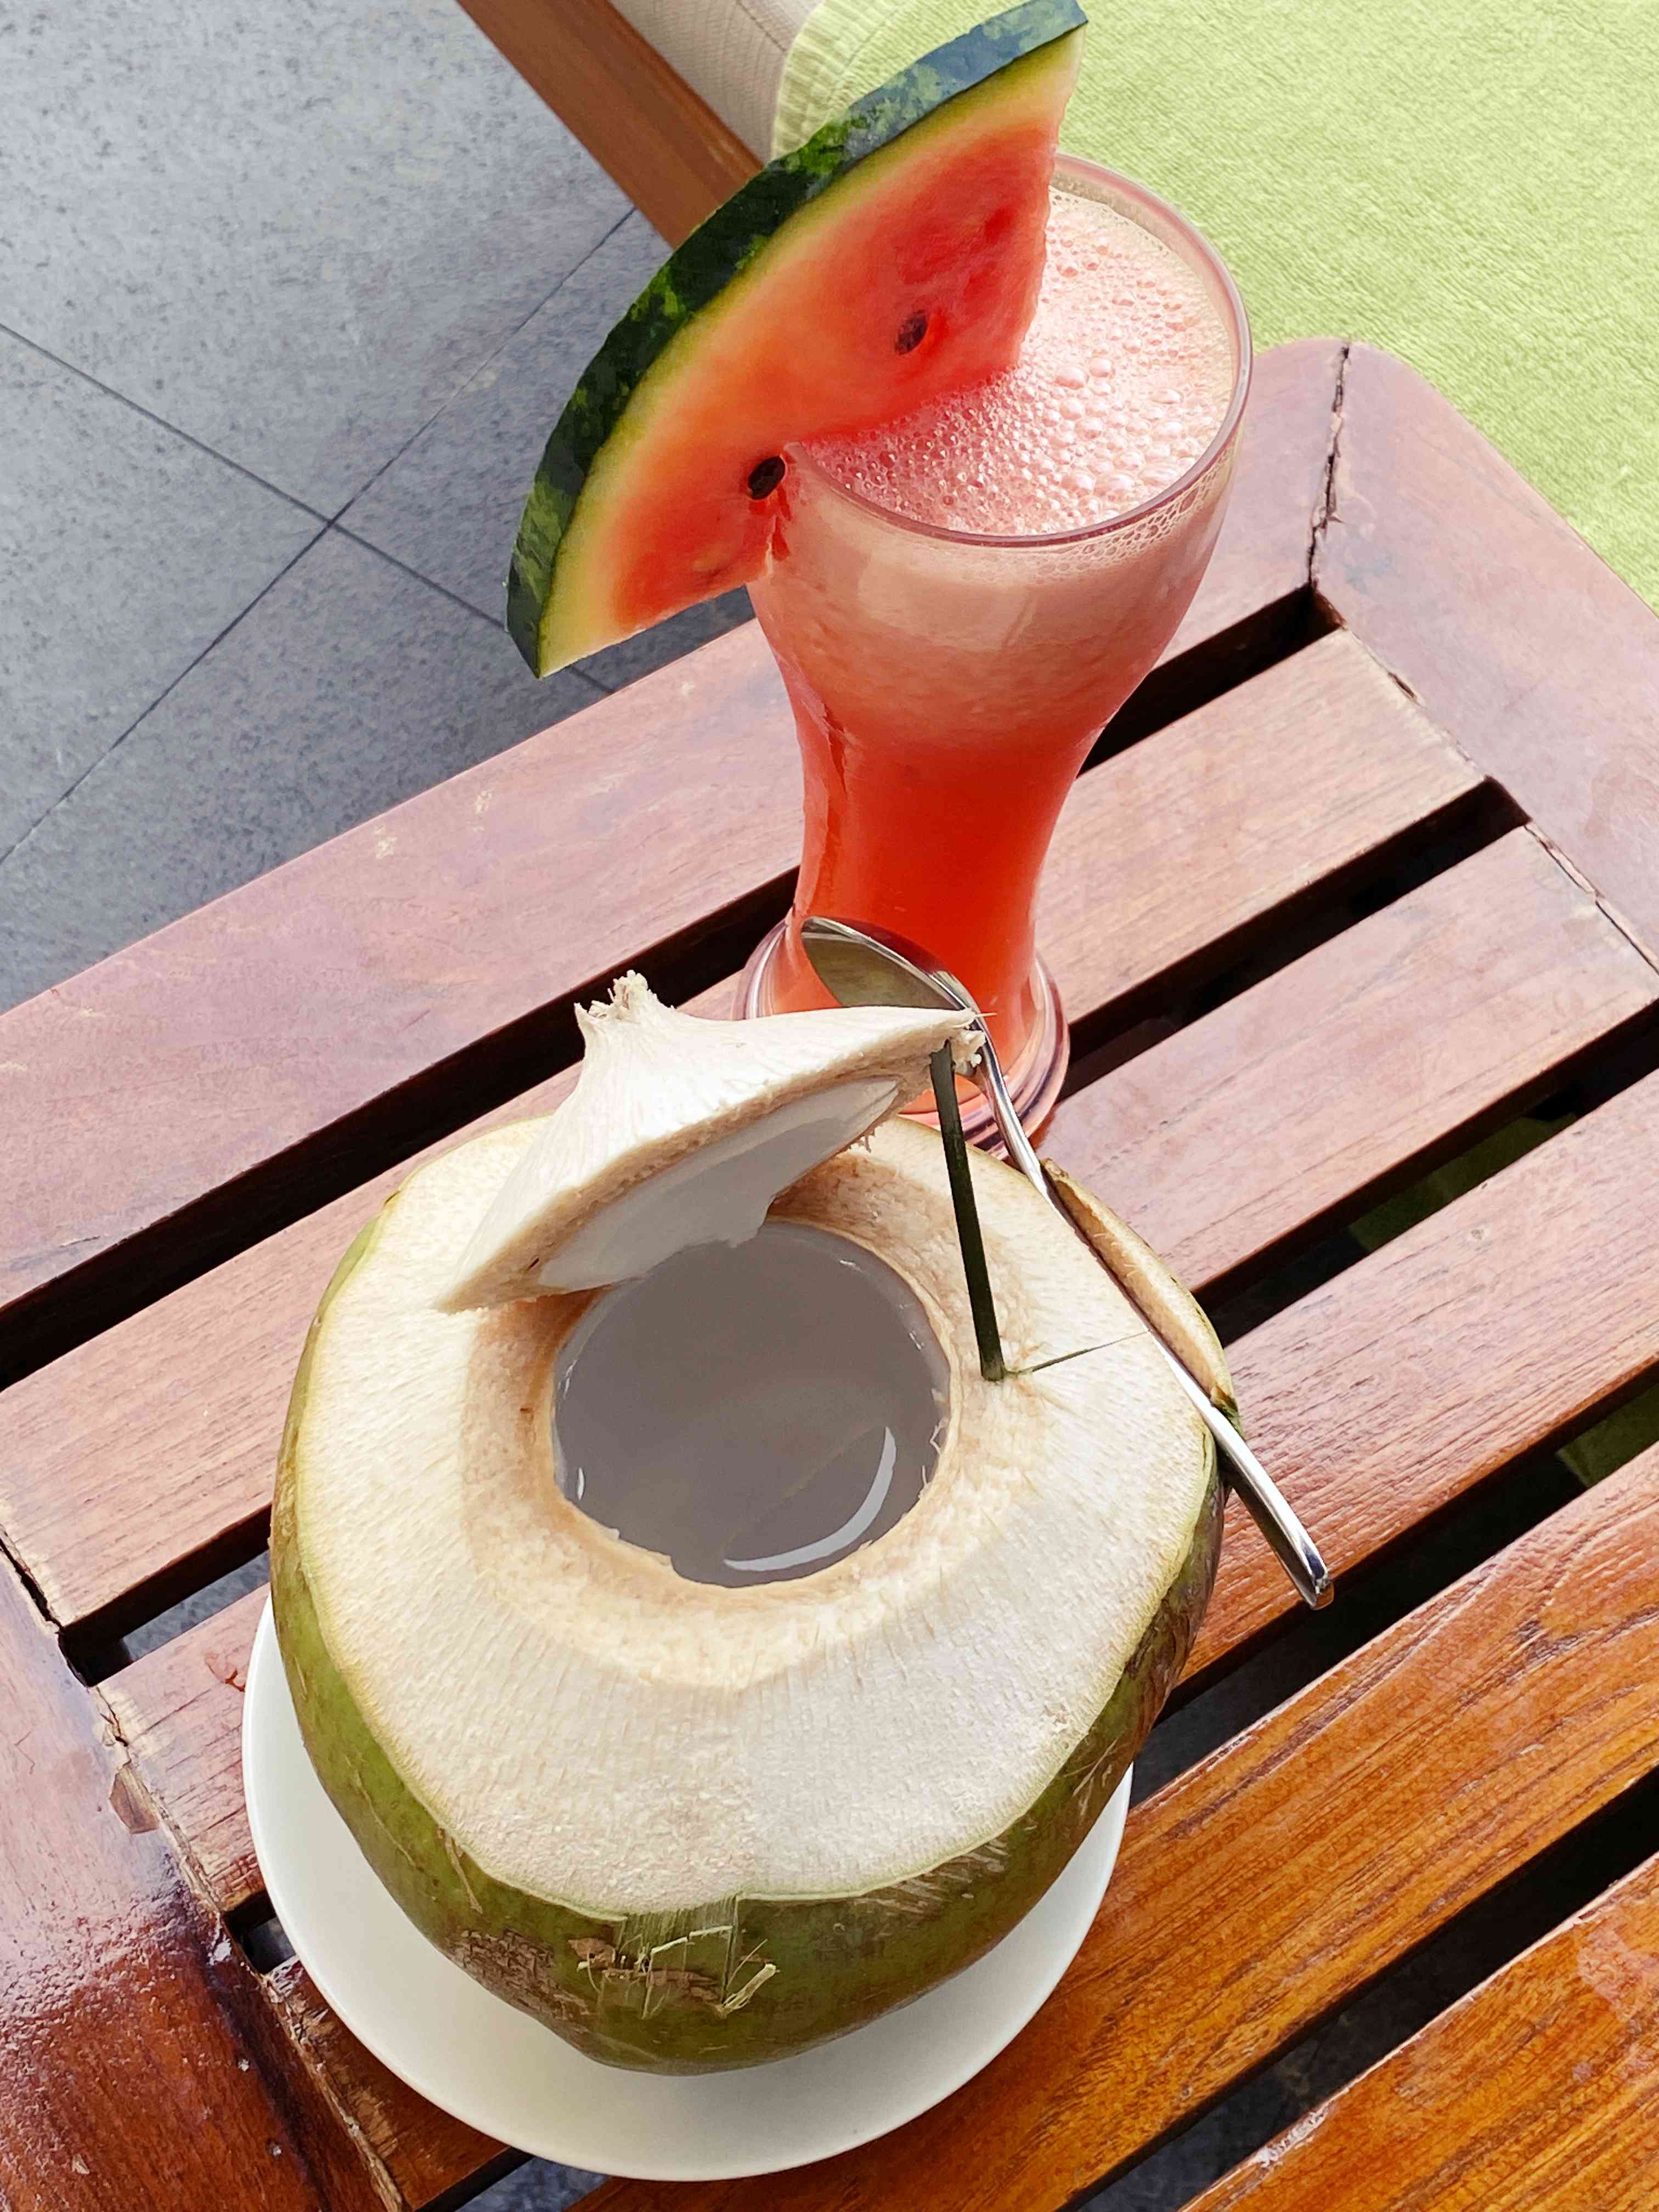 코코넛 주스와 수박 주스